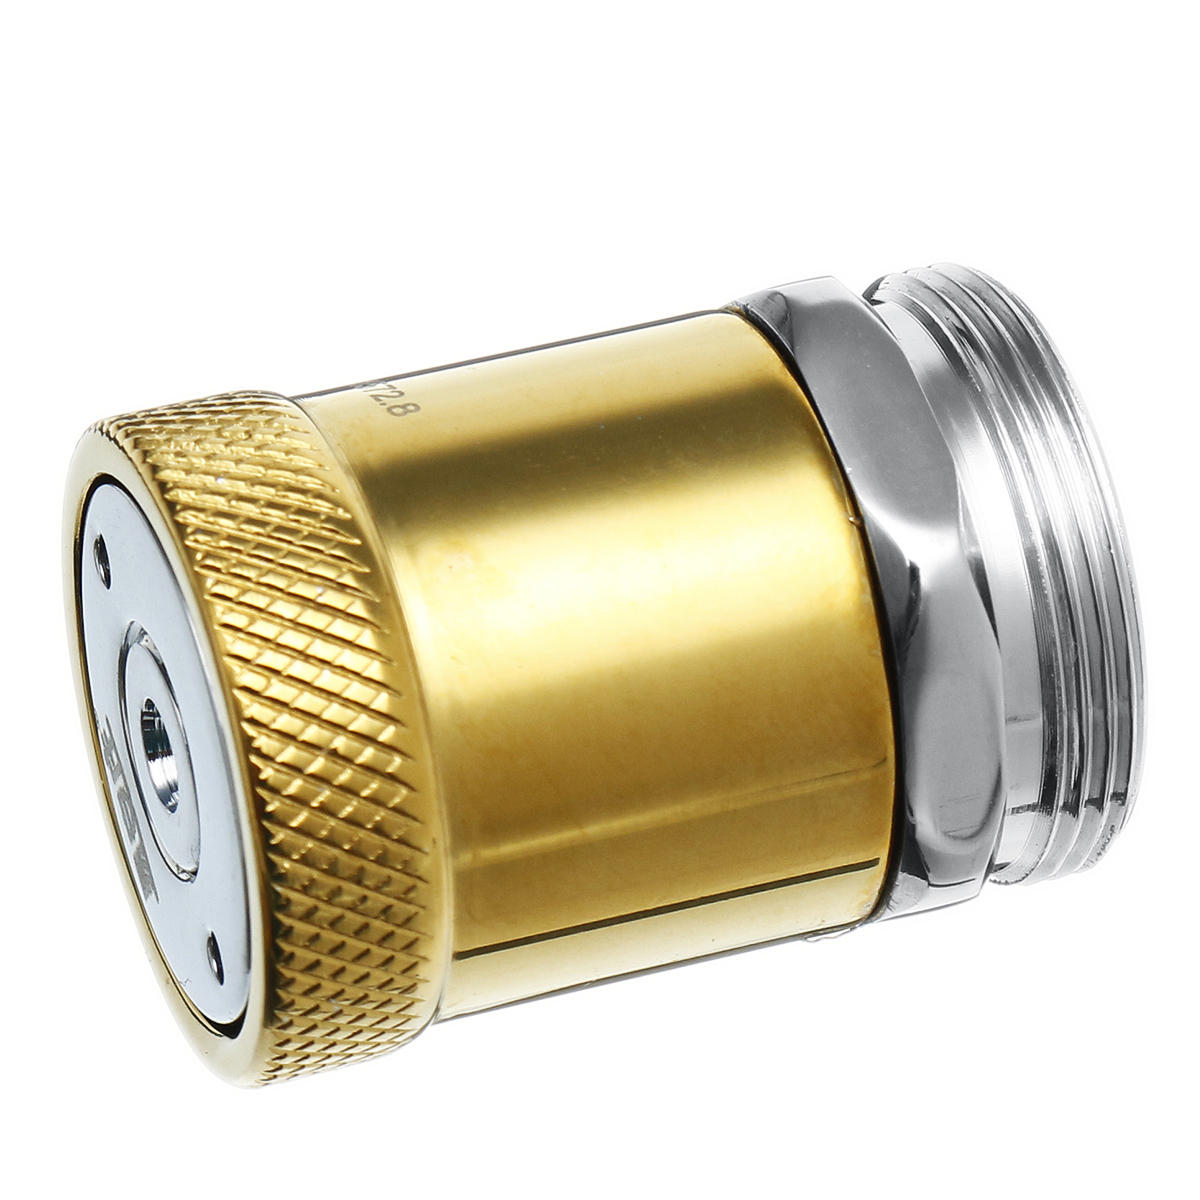 2 functie waterbesparende beluchter connector diffuser filter beluchter kraan nozzle filter